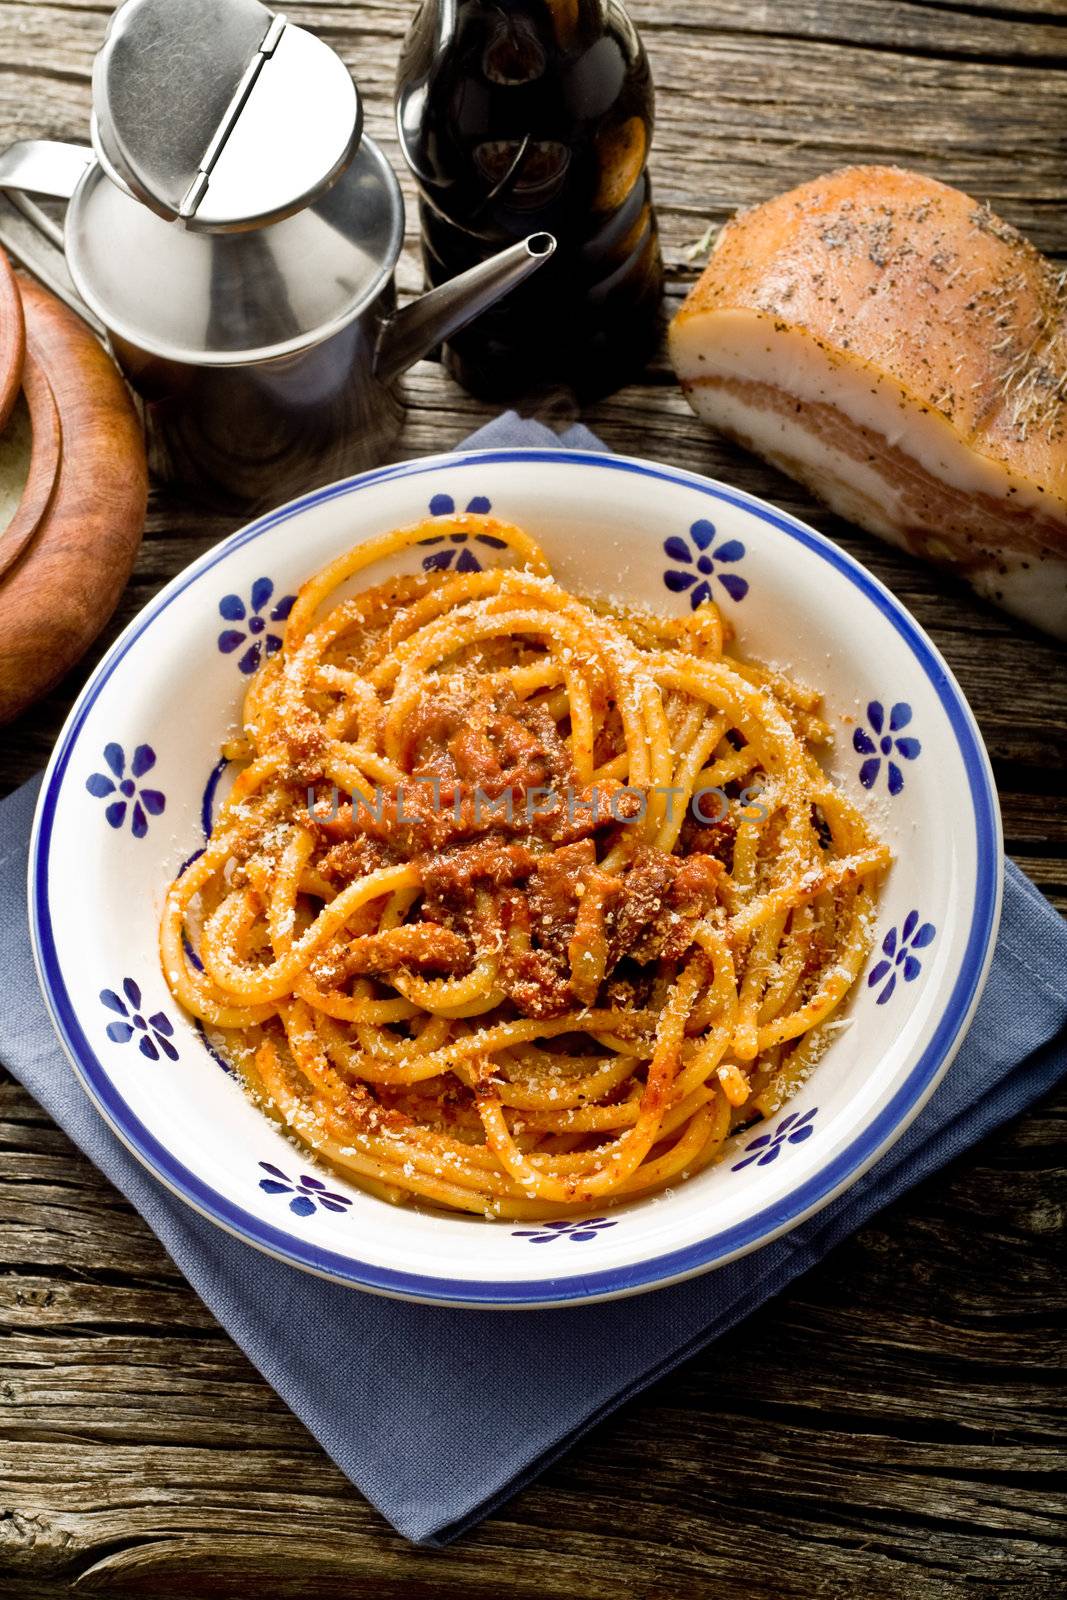 italian traditional pasta amatriciana served ona table wood